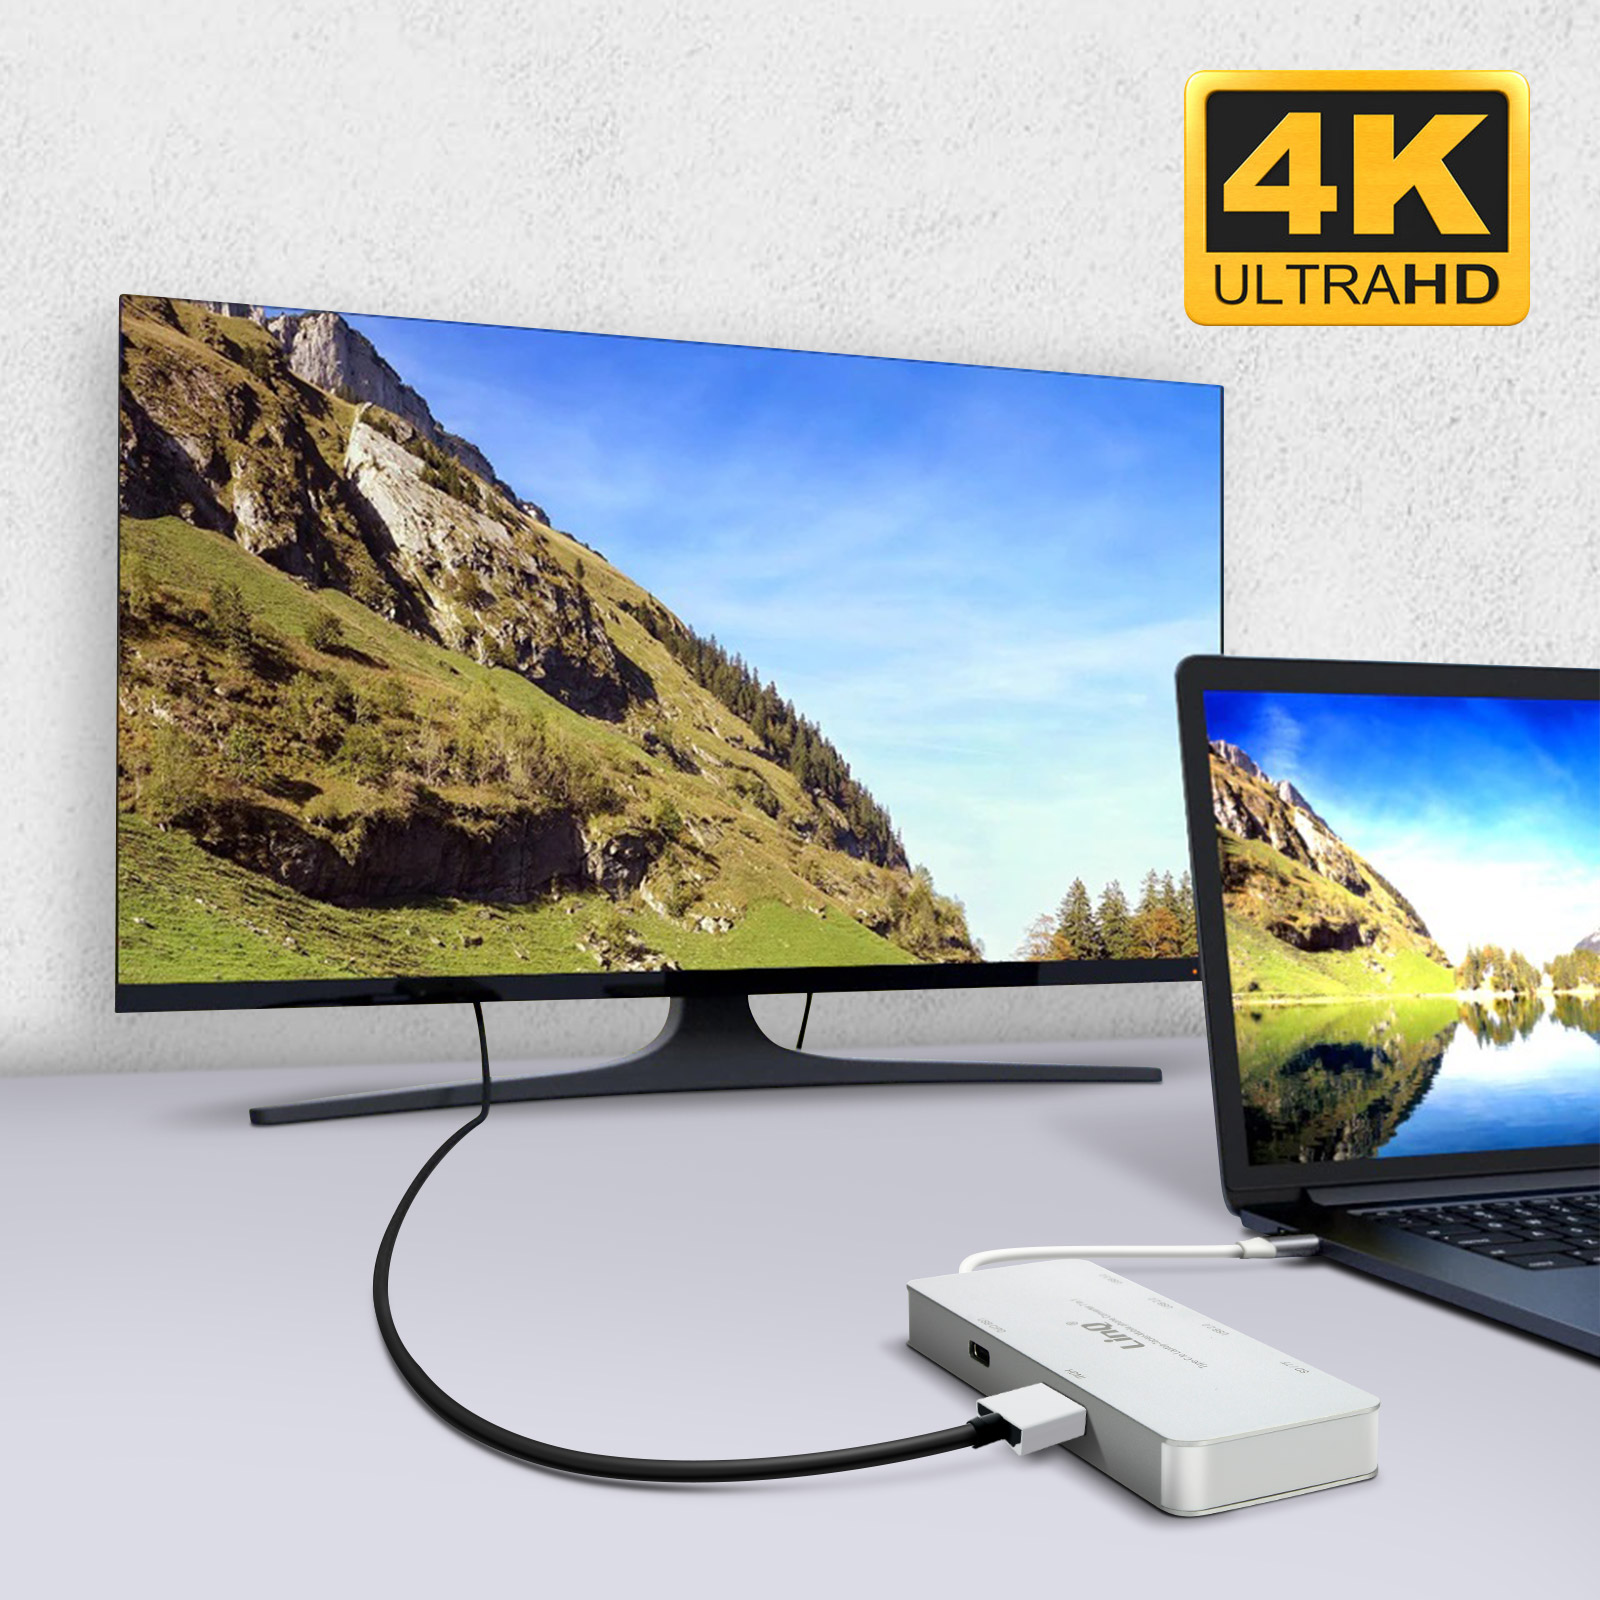 LINQ Universal, 7-in-1 USB-Hub Multiport-HUB Grau USB-C